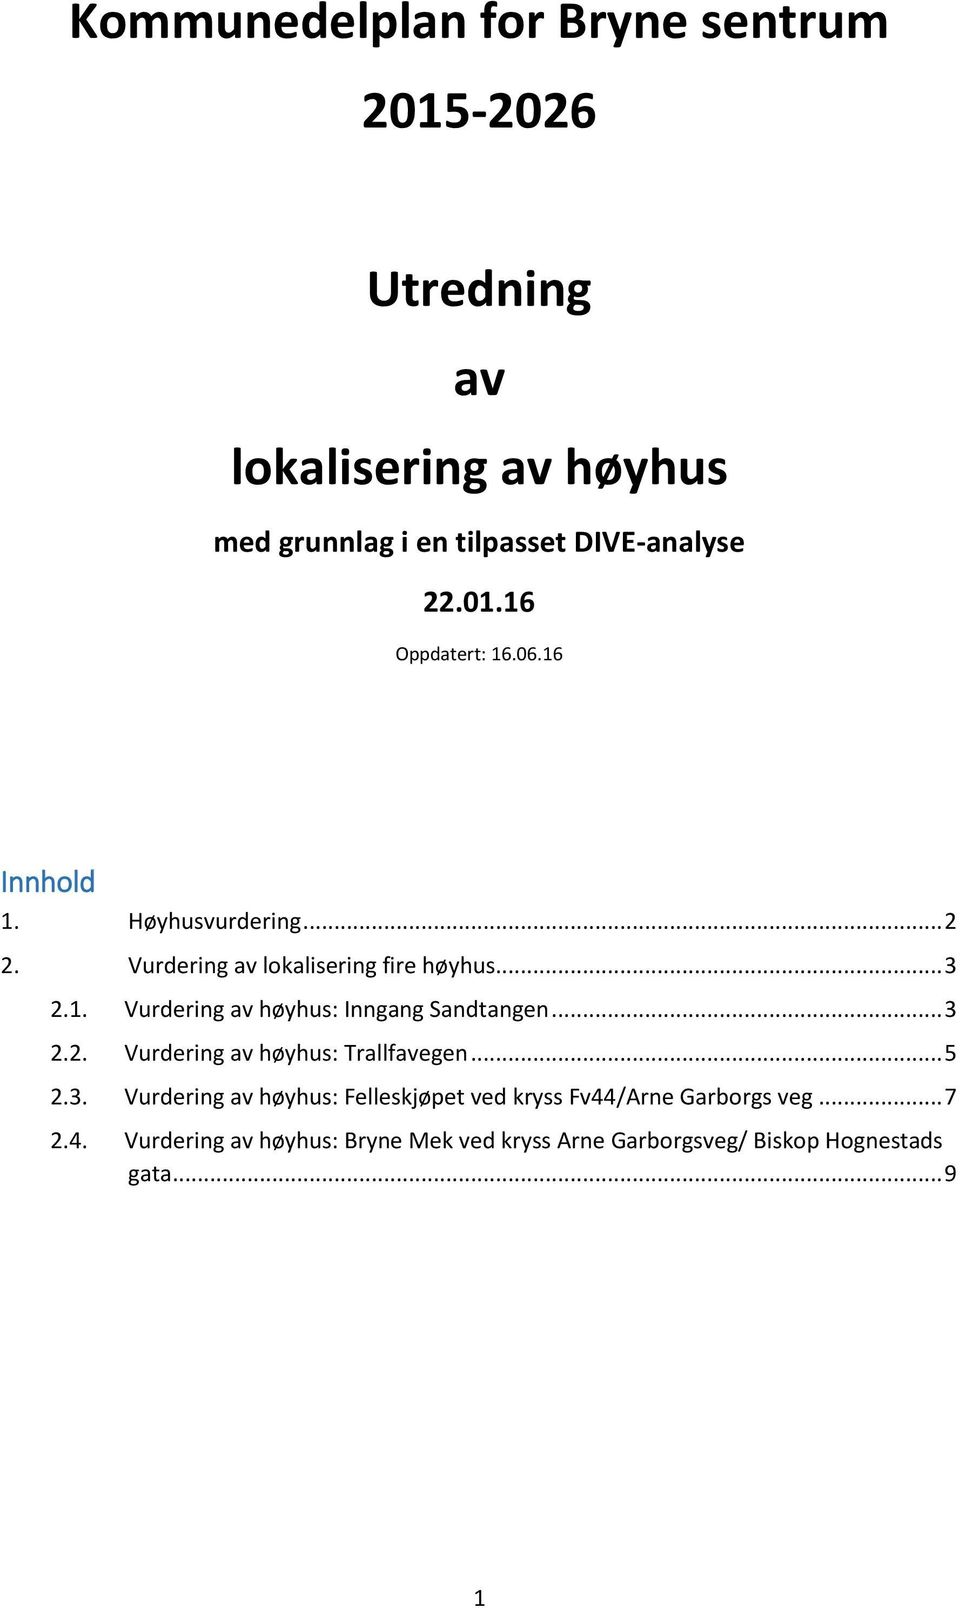 .. 3 2.2. Vurdering av høyhus: Trallfavegen... 5 2.3. Vurdering av høyhus: Felleskjøpet ved kryss Fv44/Arne Garborgs veg.